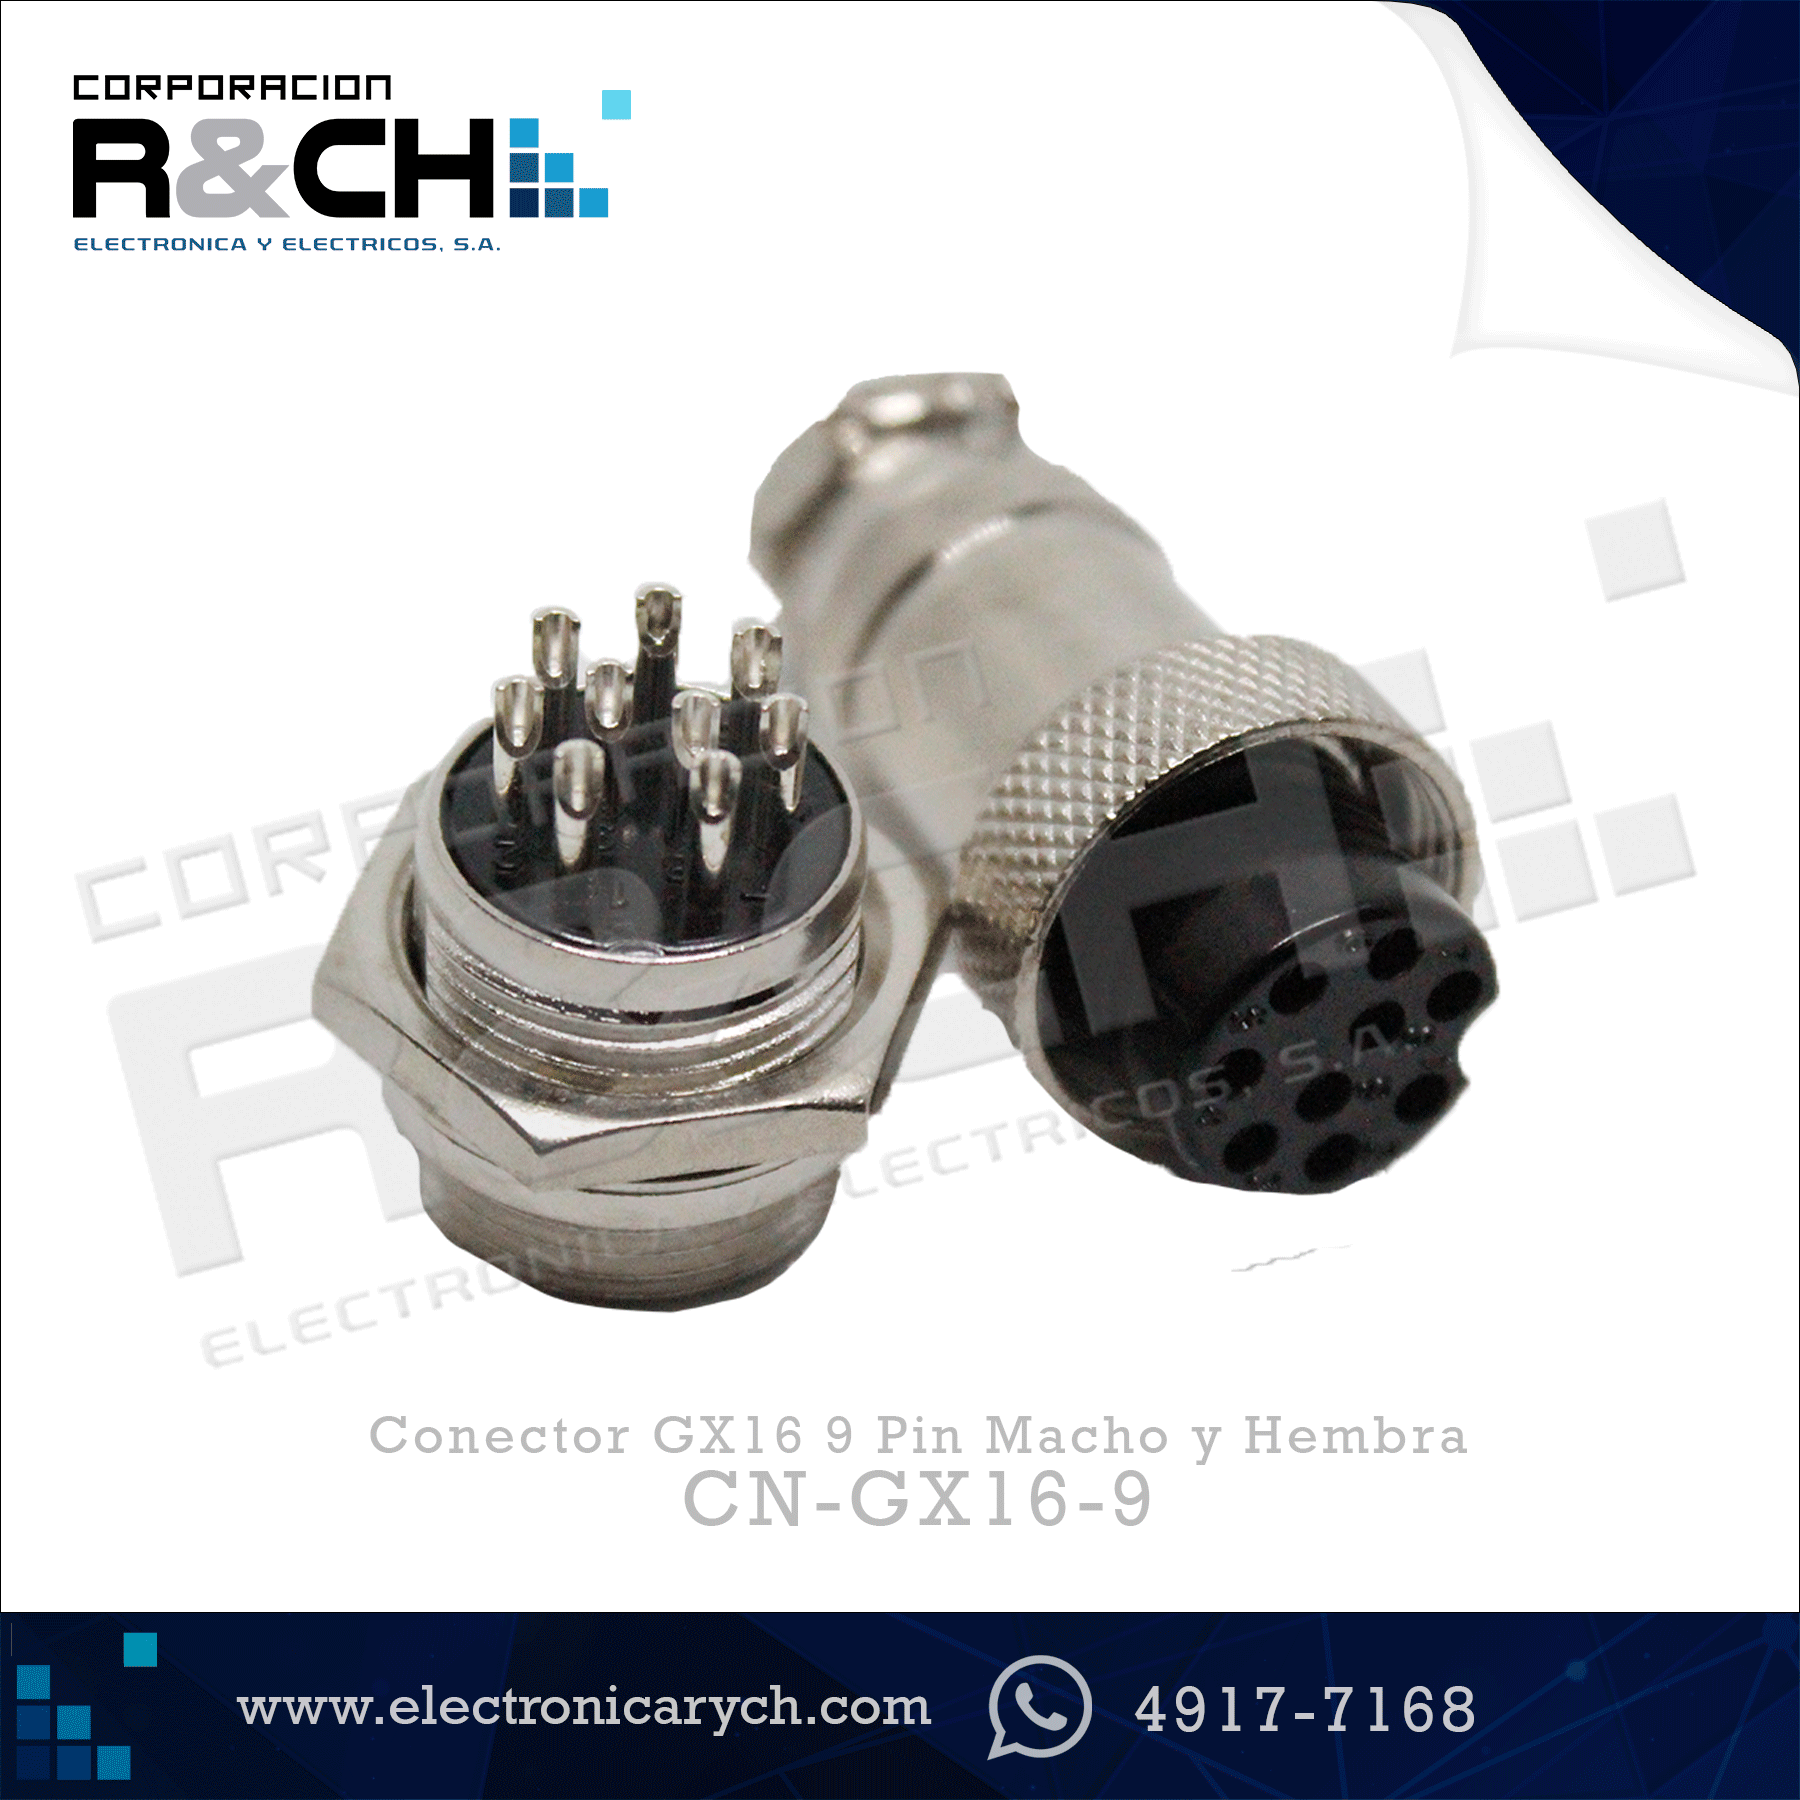 CN-GX16-9 Conector GX16 9 Pin Macho y Hembra